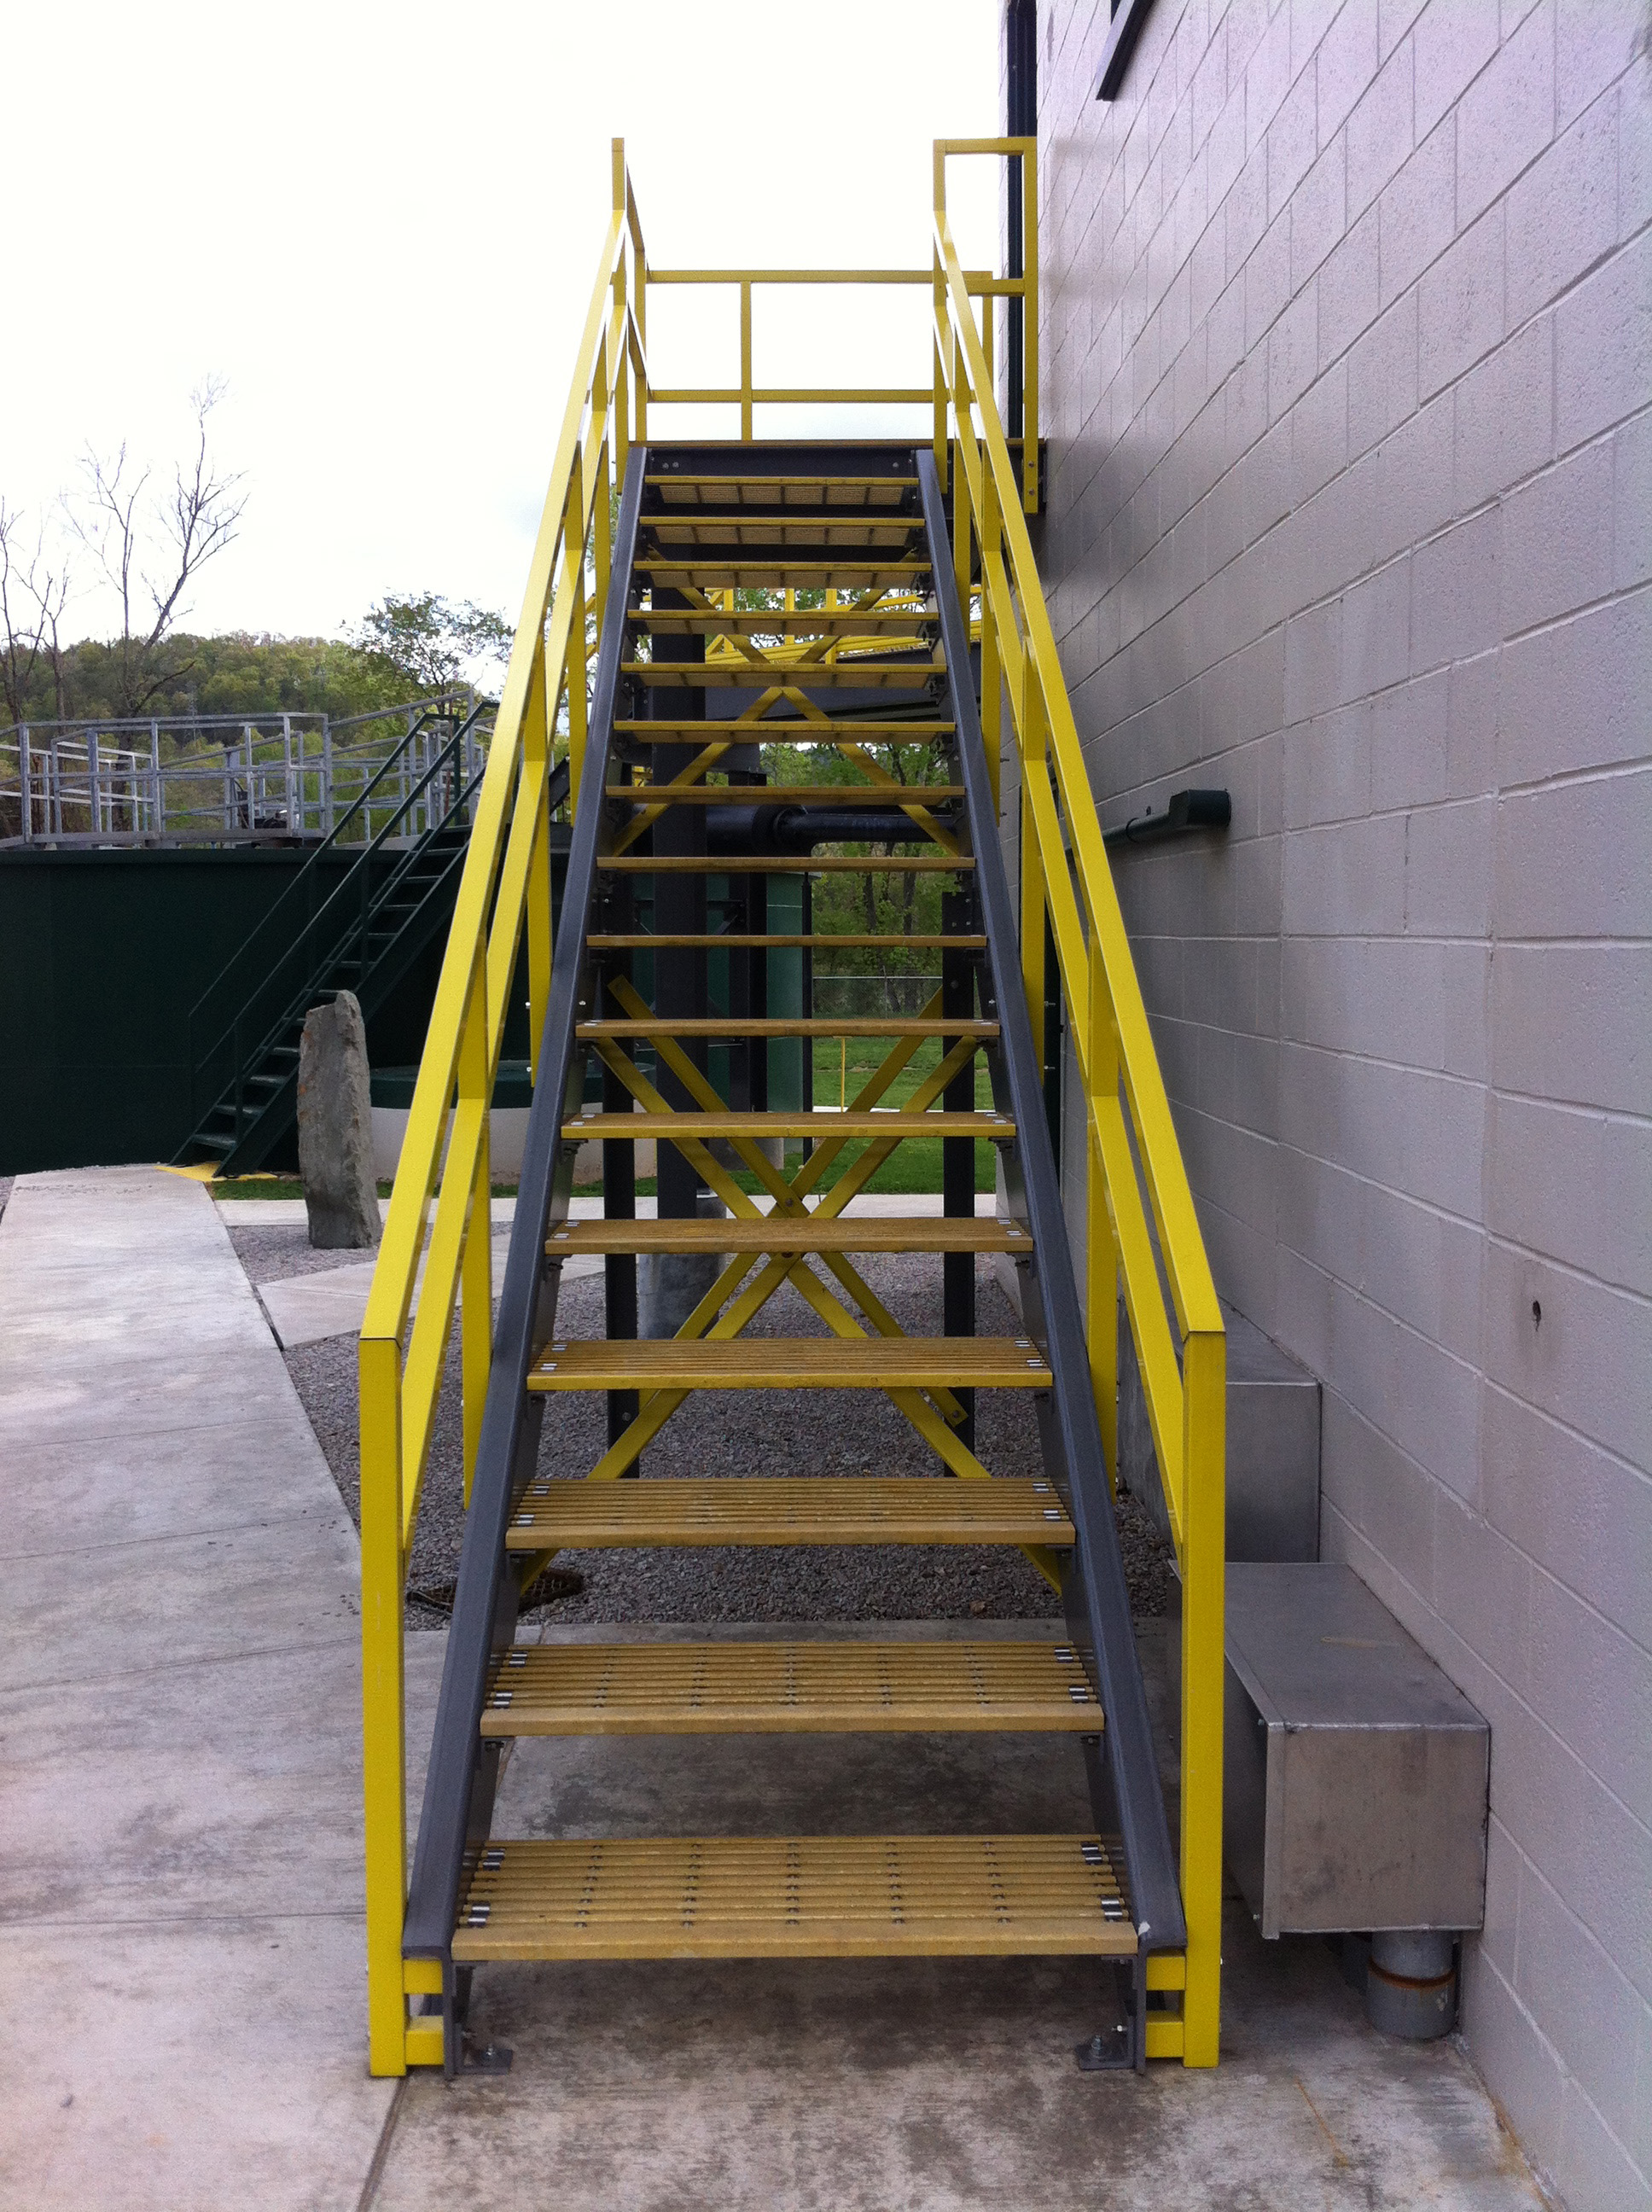 SAFRAIL handrails